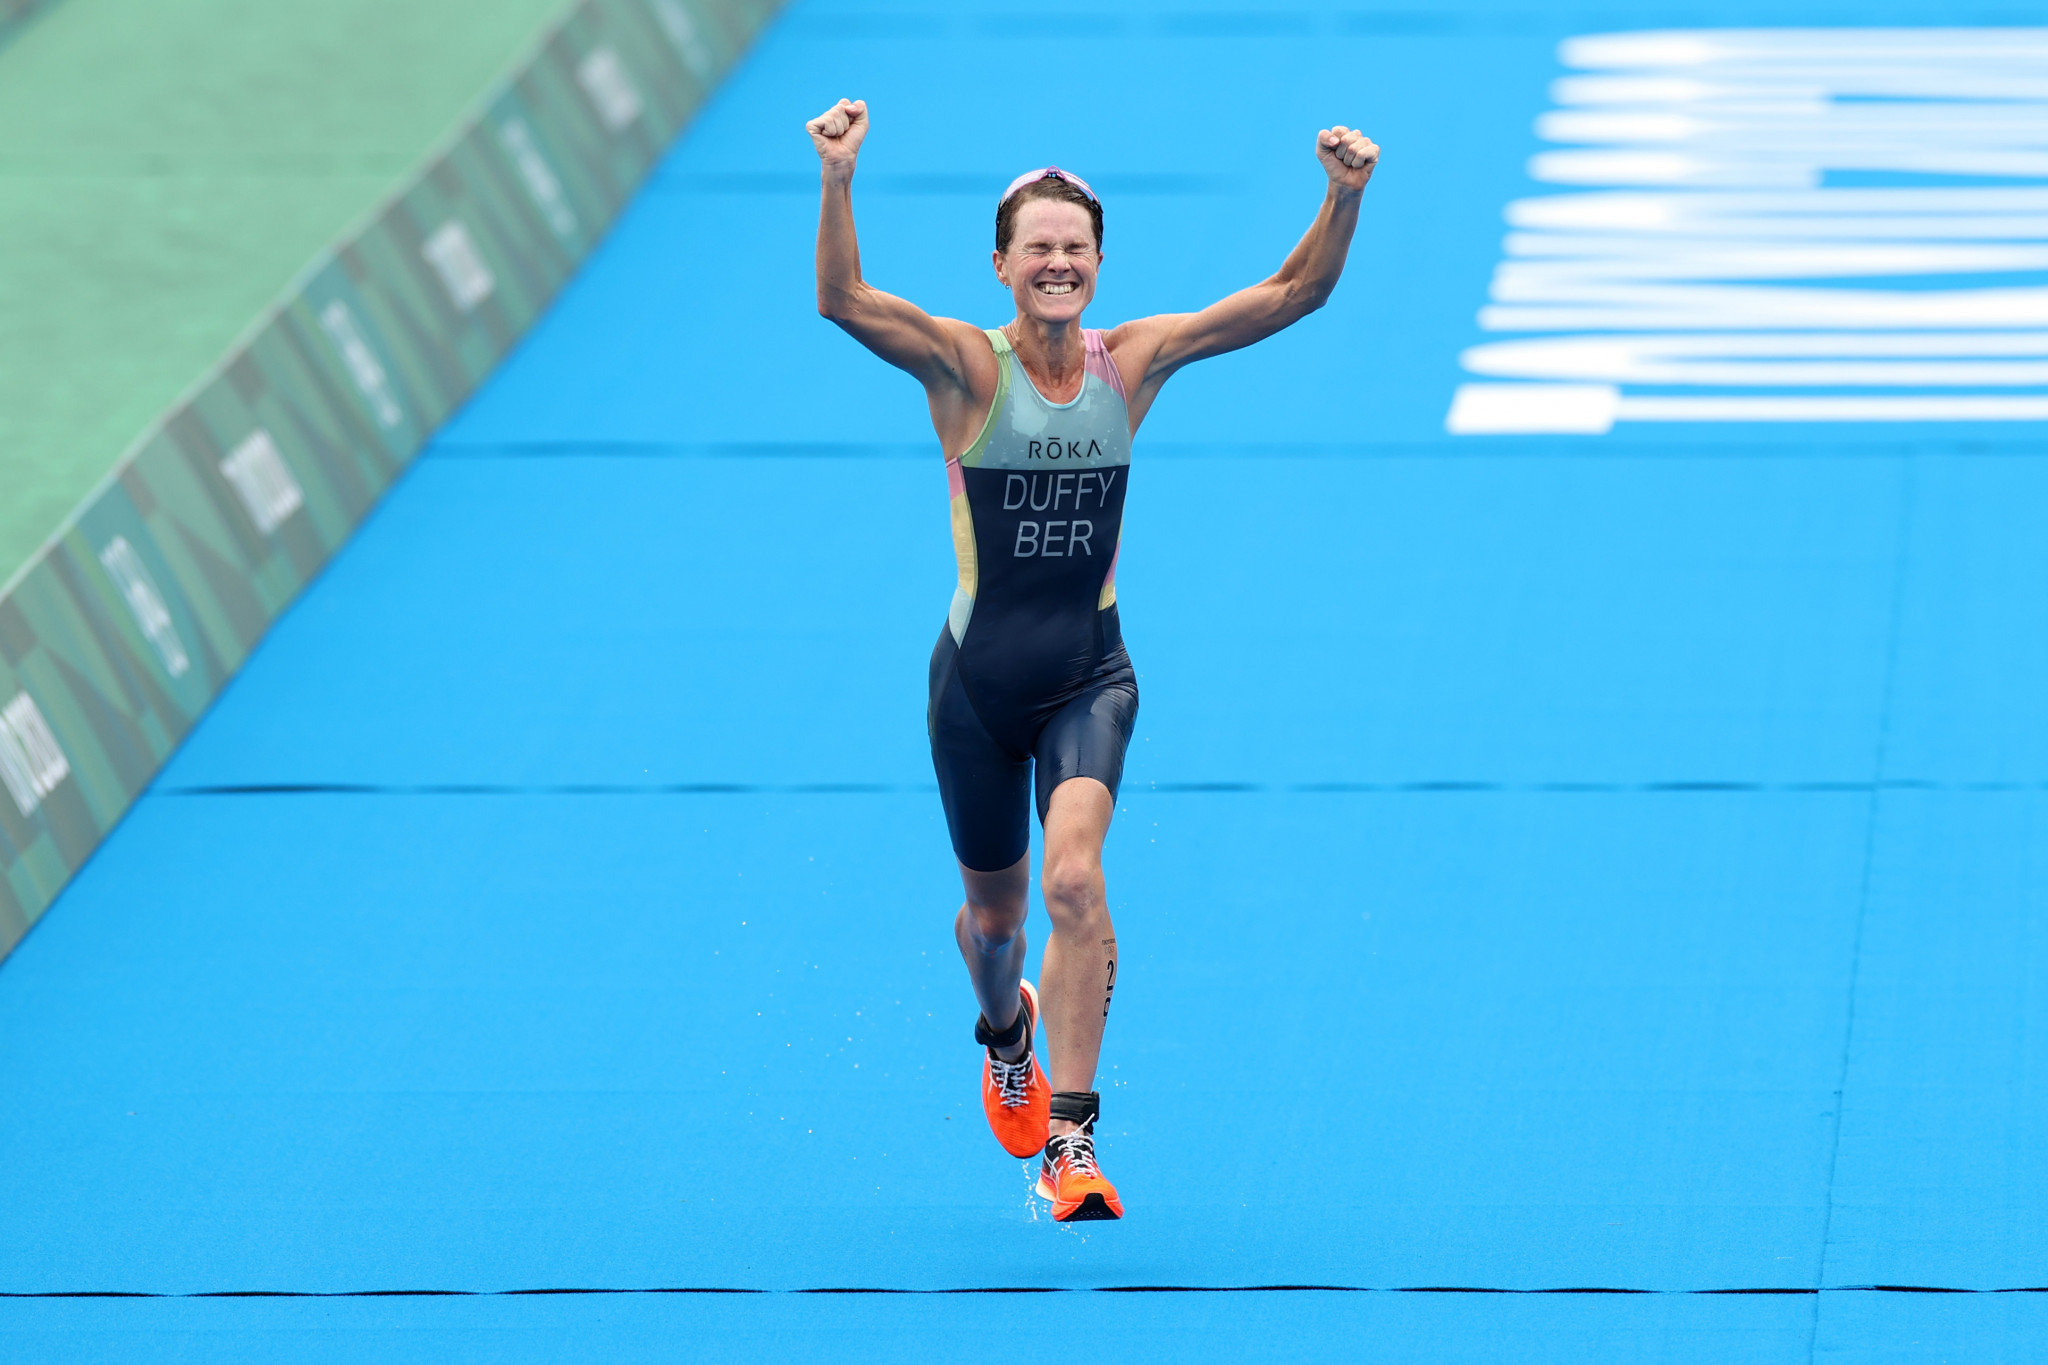 Gold Coast 2018 triathlon gold medallist Duffy included in Bermuda's Birmingham 2022 team